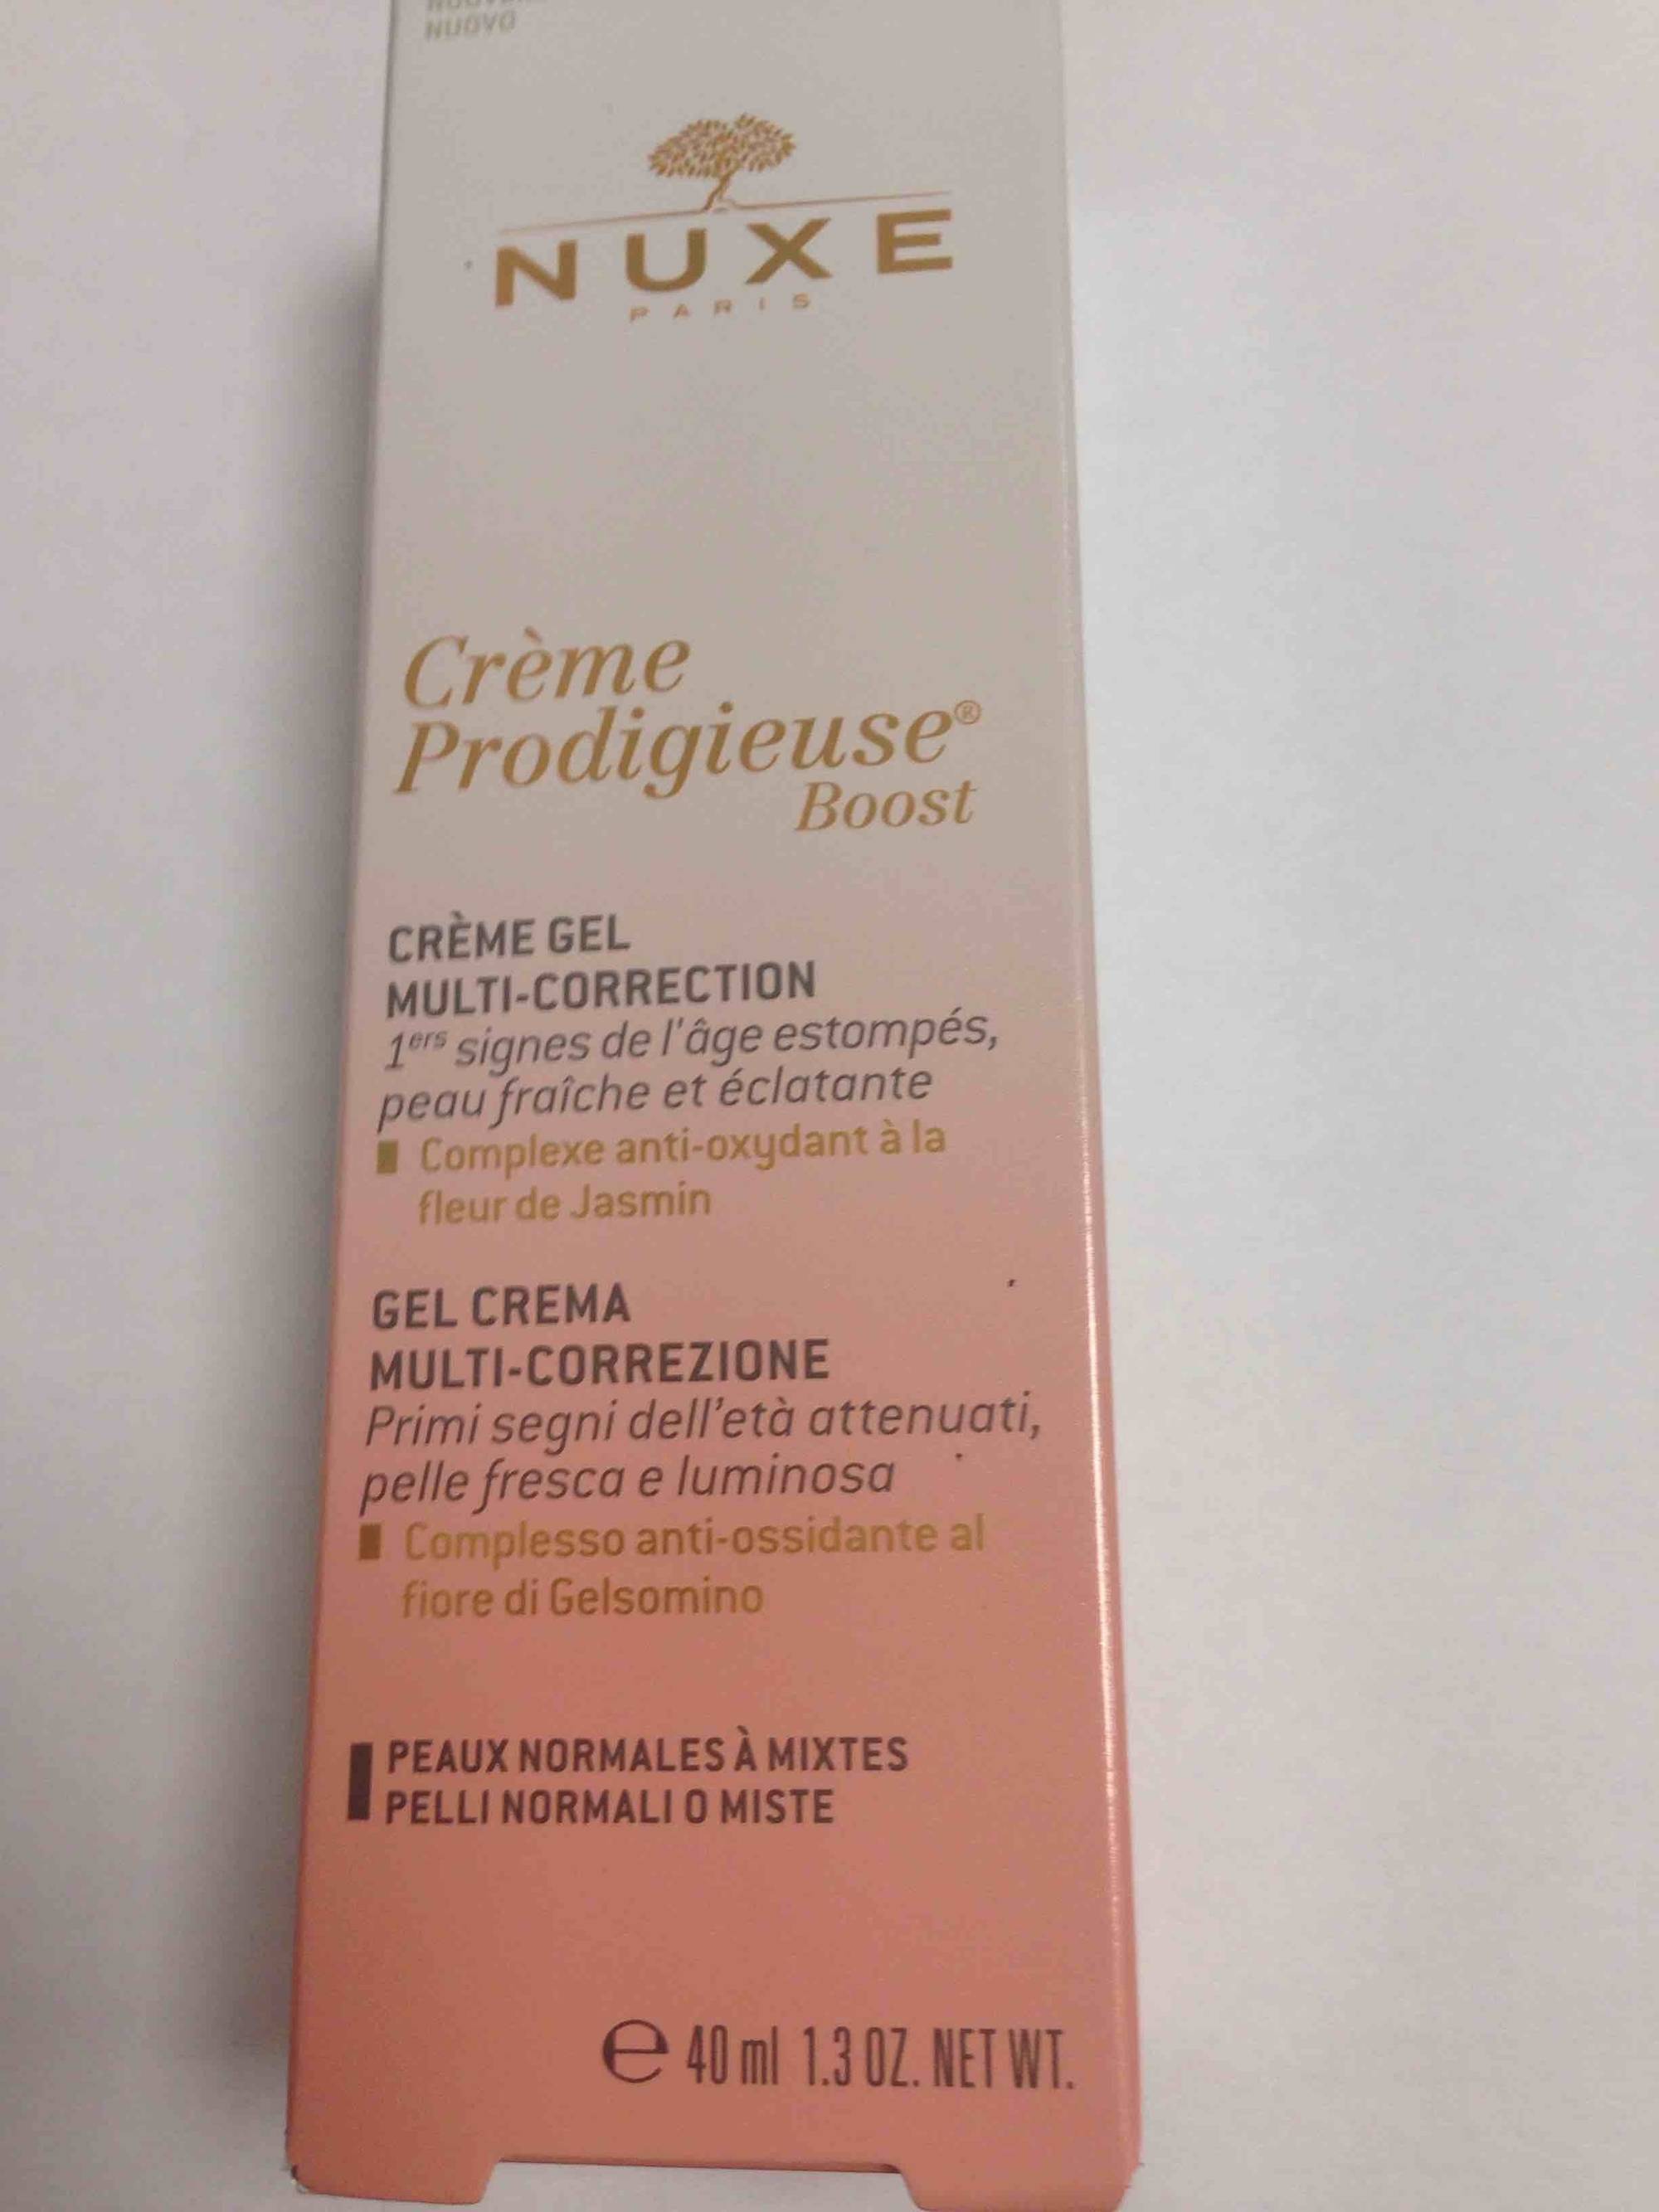 NUXE PARIS - Crème prodigieuse boost -  Crème gel multi-correction